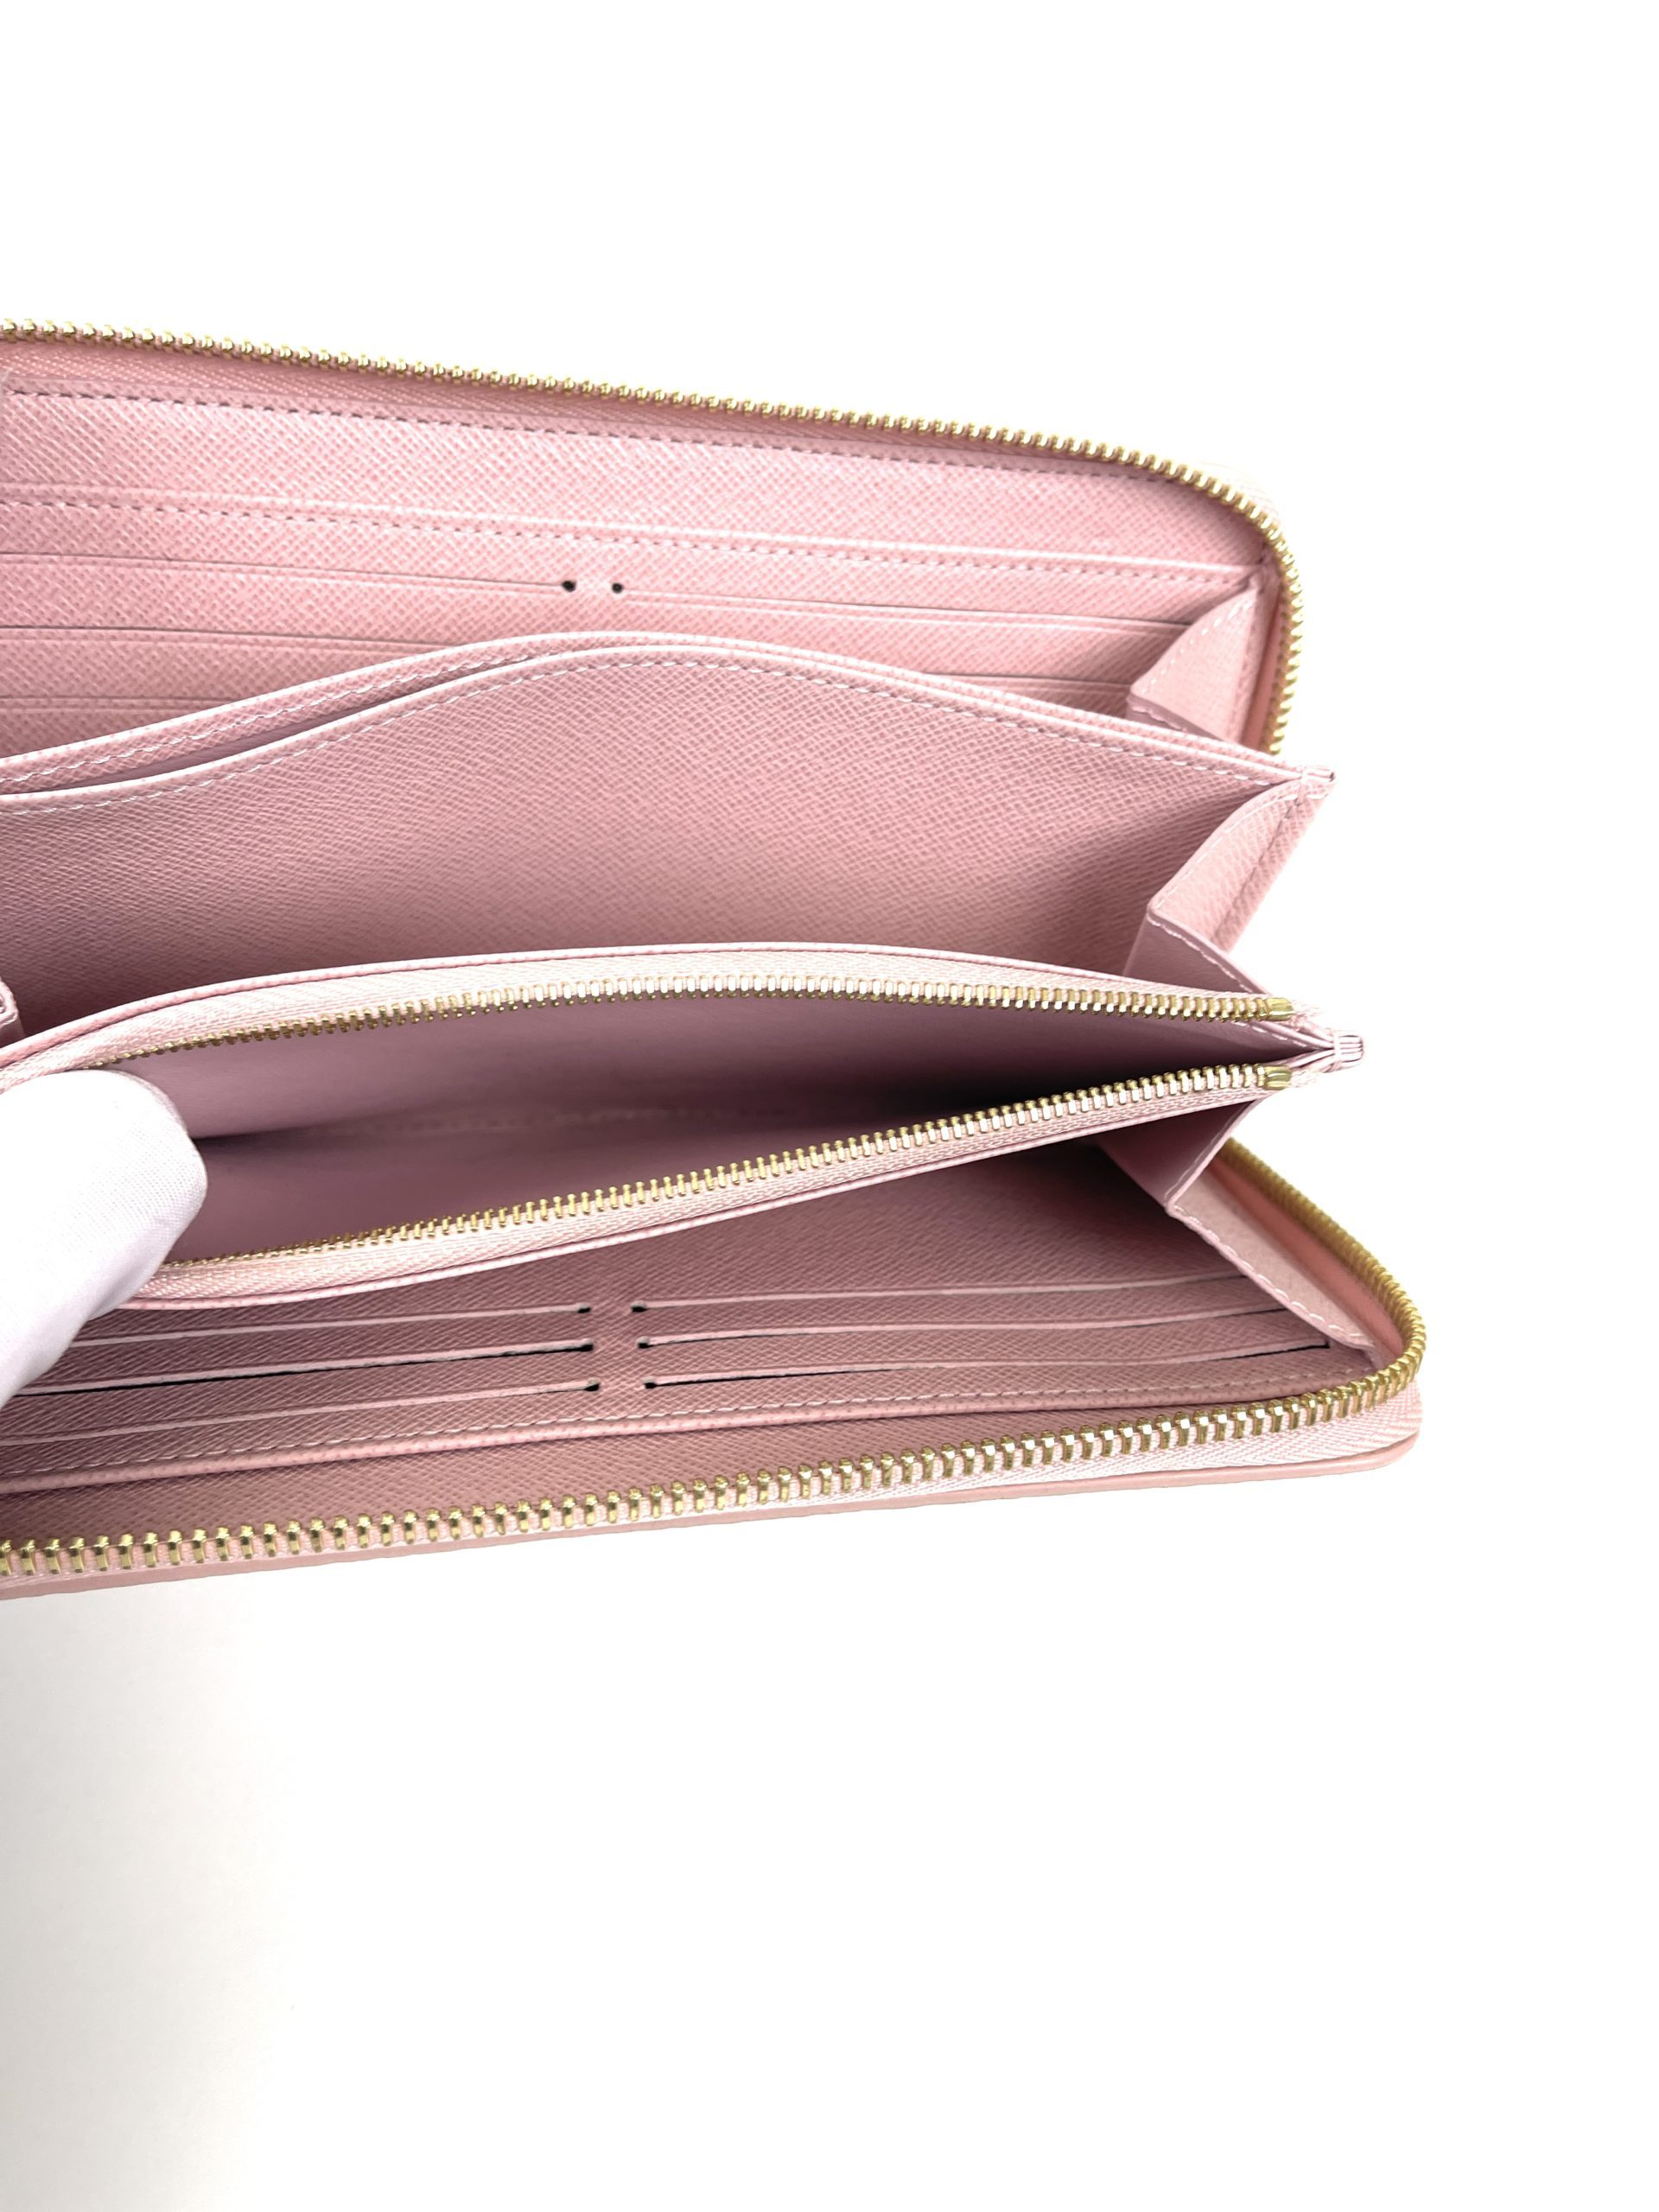 Louis Vuitton Azur Zippy Wallet with Rose Ballerine Interior - A